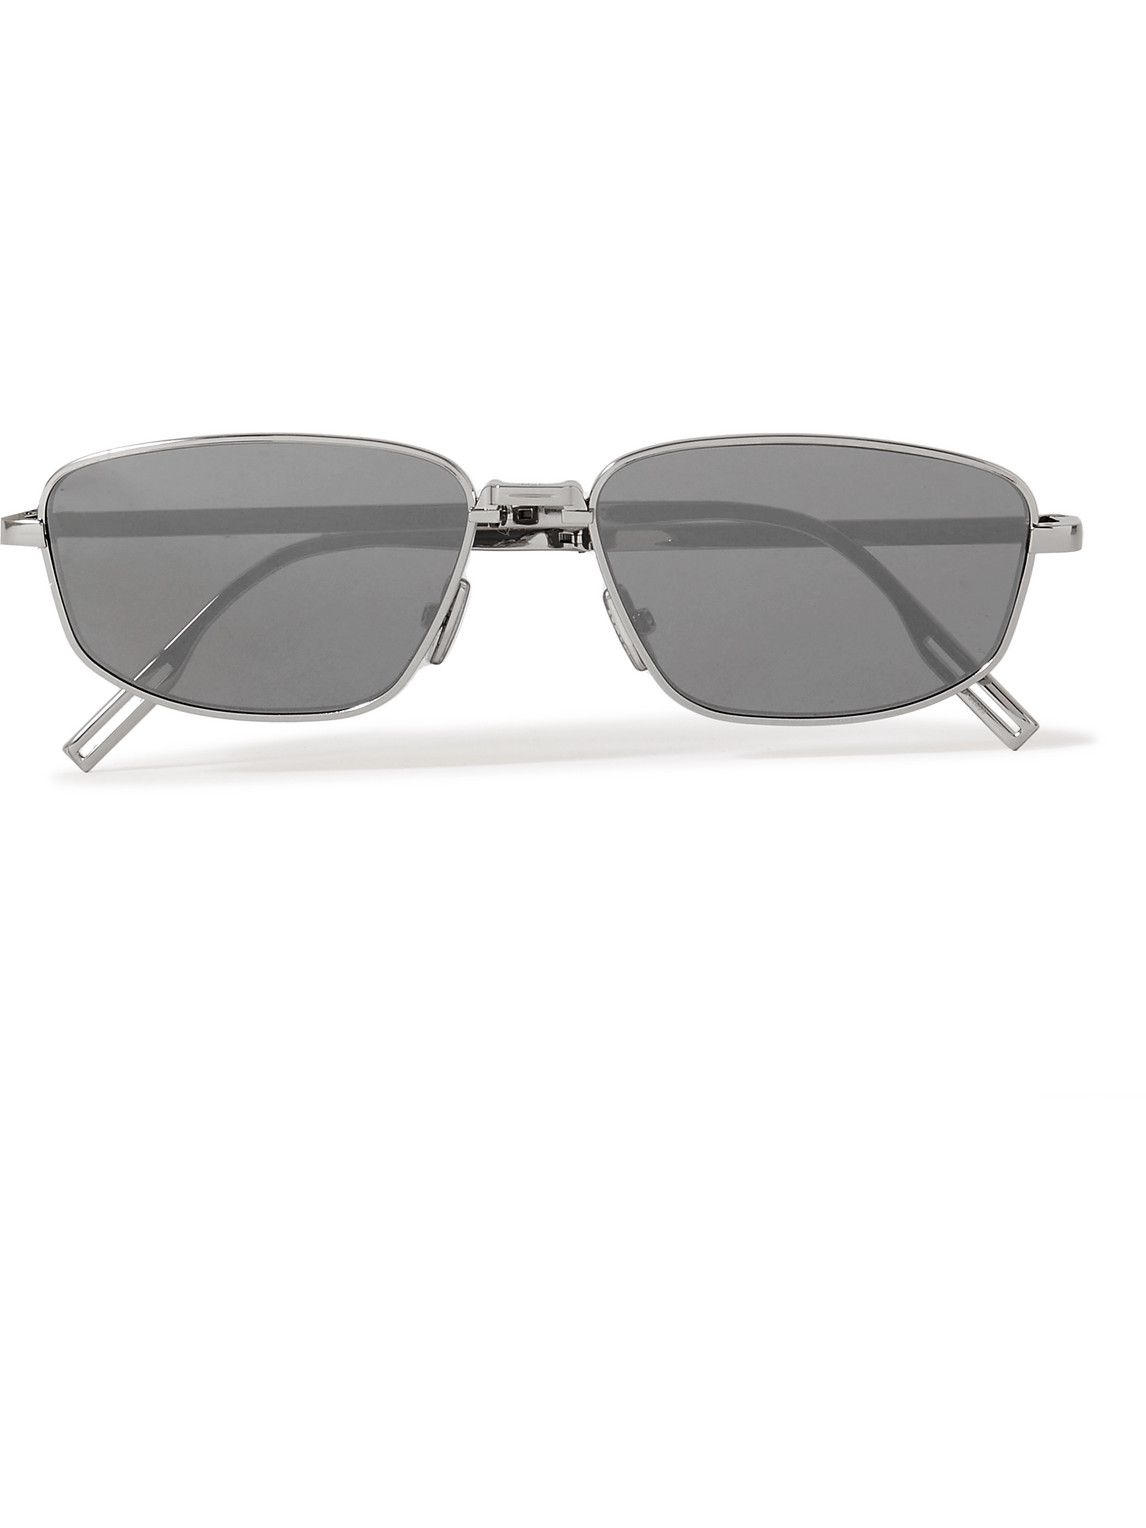 Dior Eyewear - Dior90 S1U Rectangular-Frame Silver-Tone Sunglasses - Men - Silver von Dior Eyewear